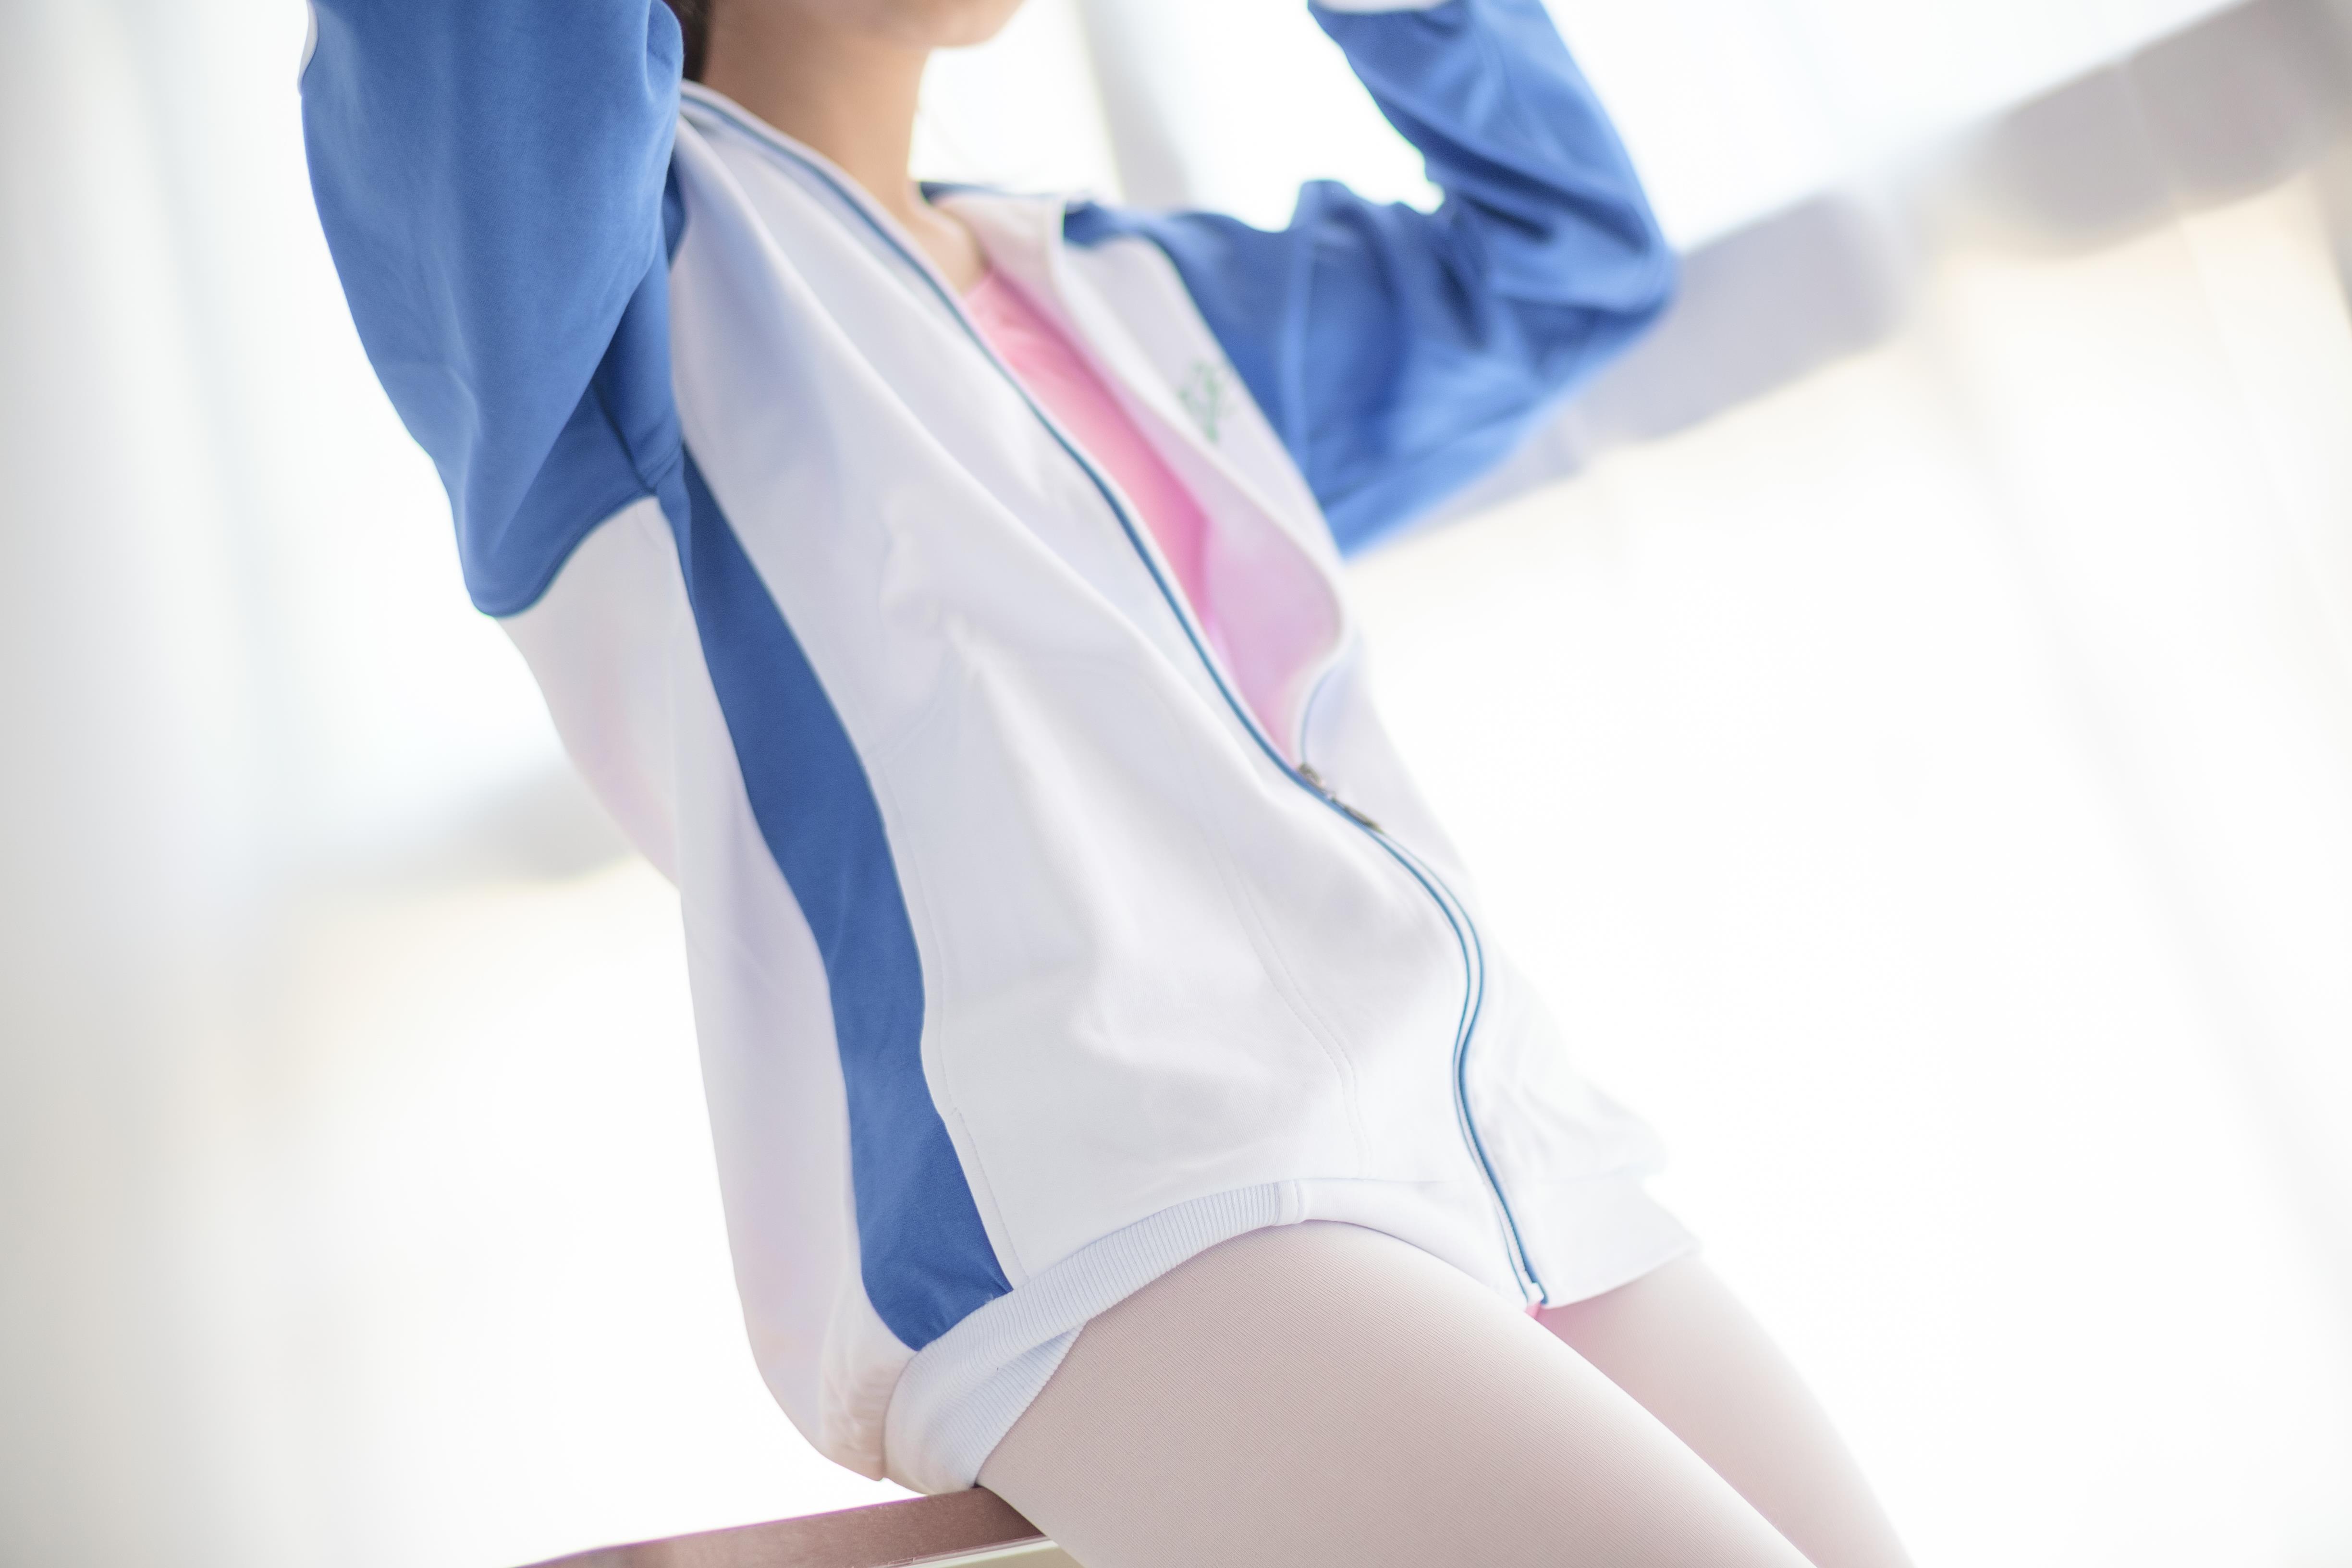 [森萝财团]萝莉R15-012 蓝白校服与粉色紧身运动连体衣加白色丝袜美腿性感私房写真集,